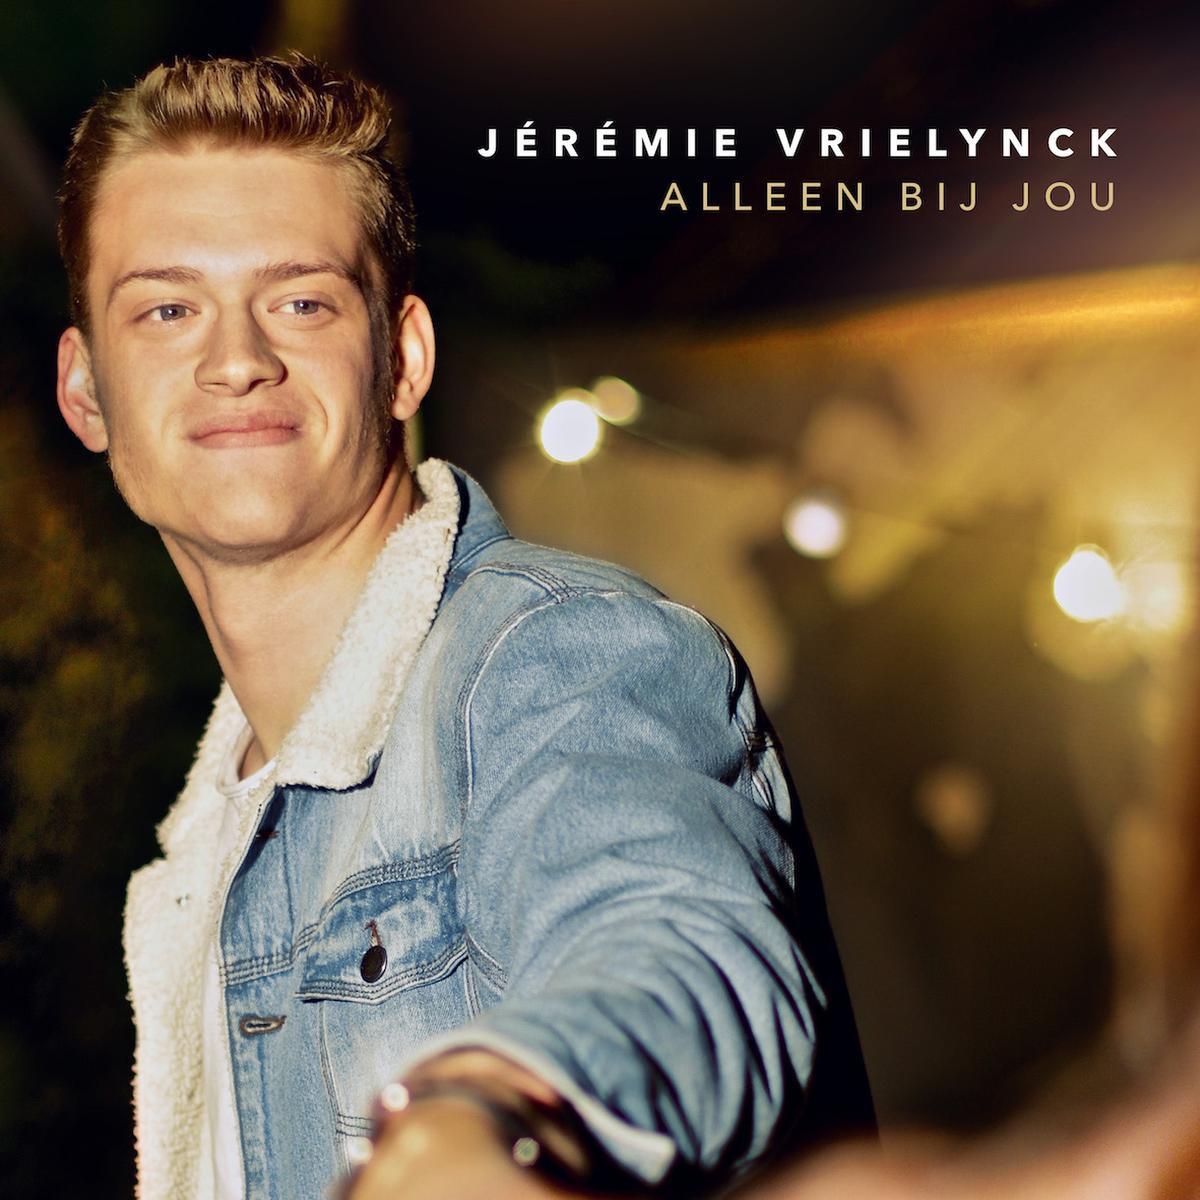 Jérémie Vrielynck viert 20ste verjaardag met nieuwe single 'Alleen bij jou' en prille liefde Julie